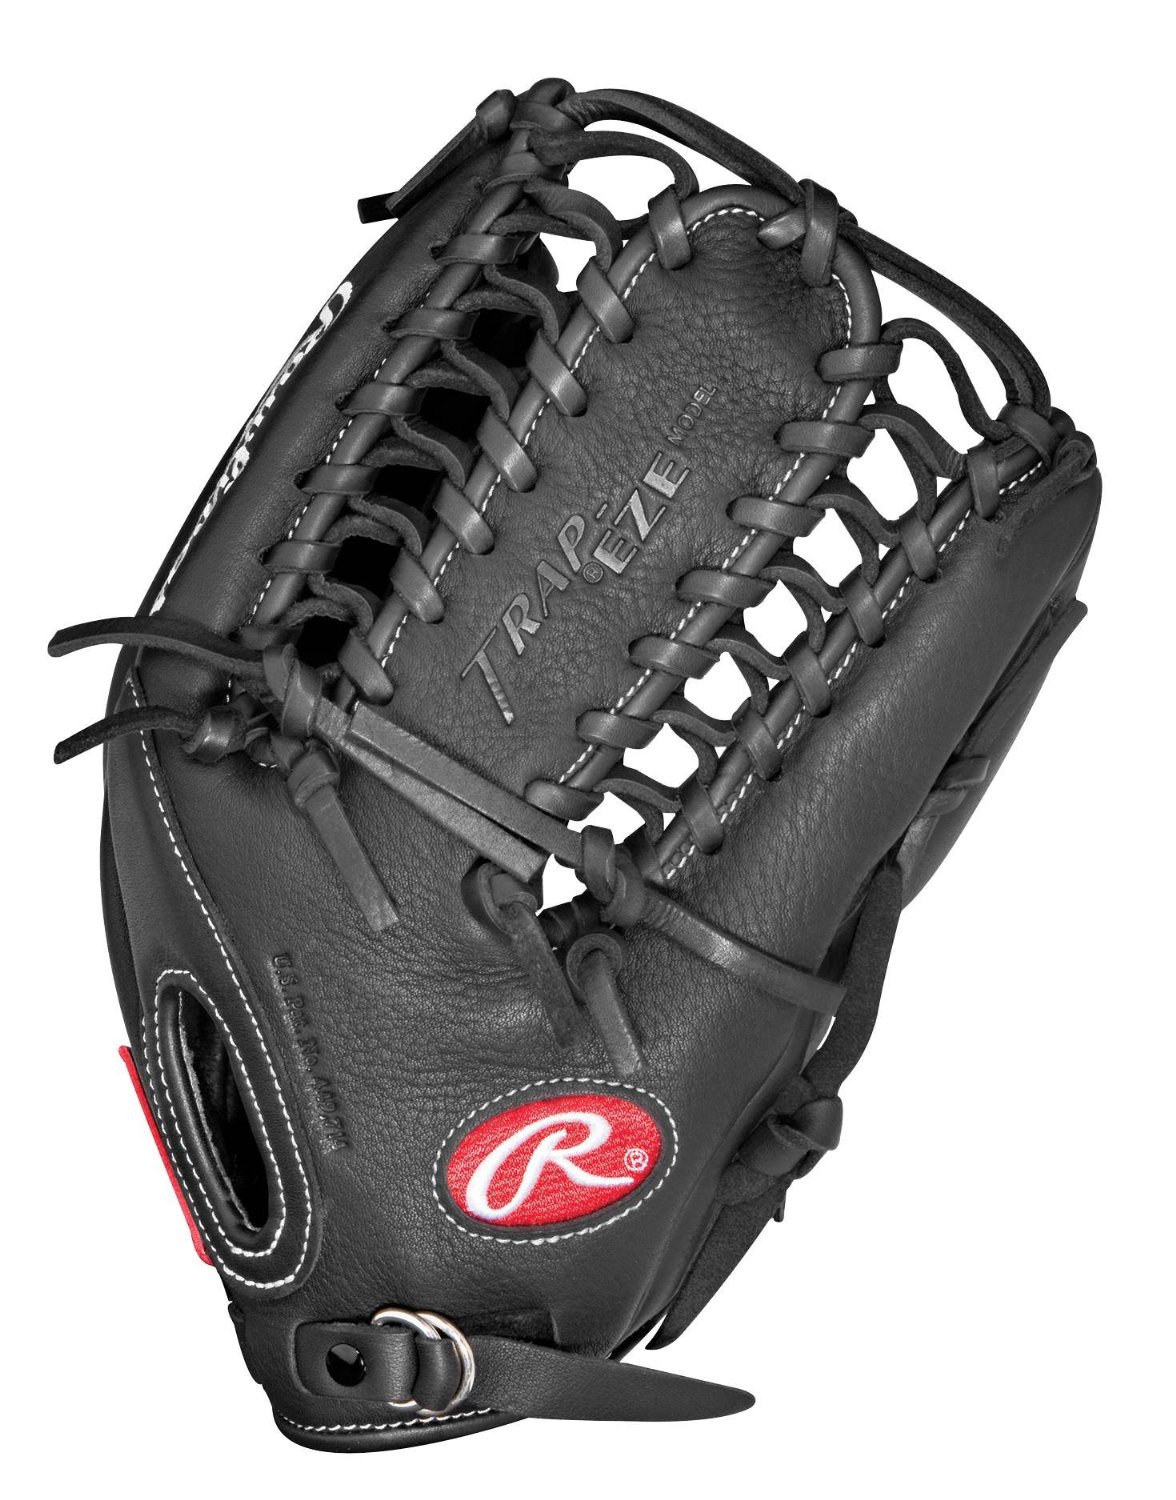 Best Gloves For Baseball And Softball 03 